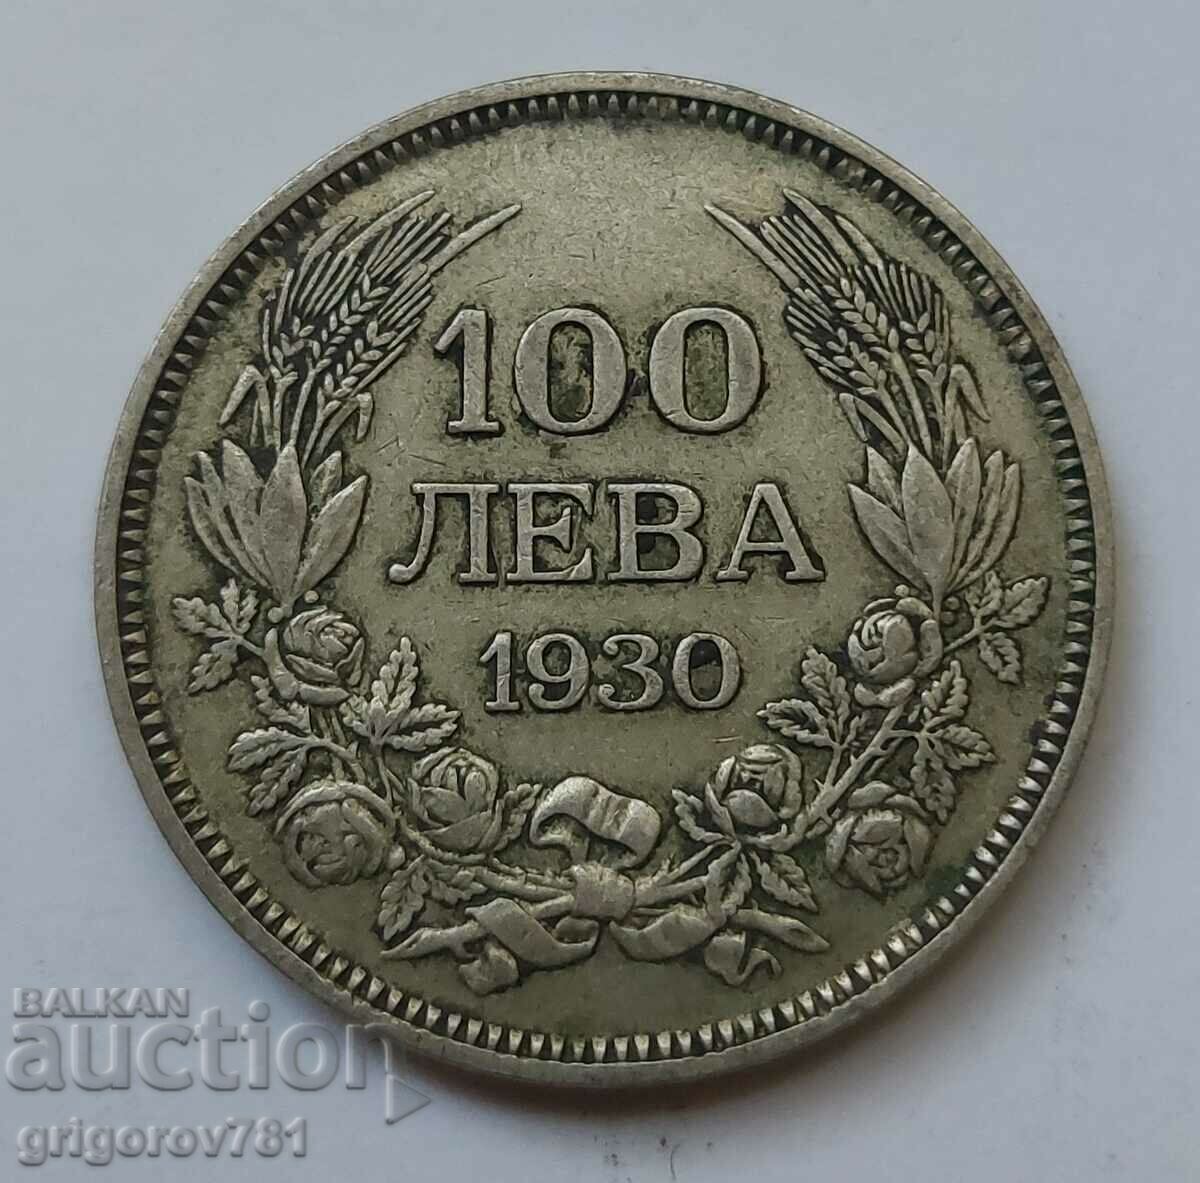 100 leva silver Bulgaria 1930 - silver coin #19